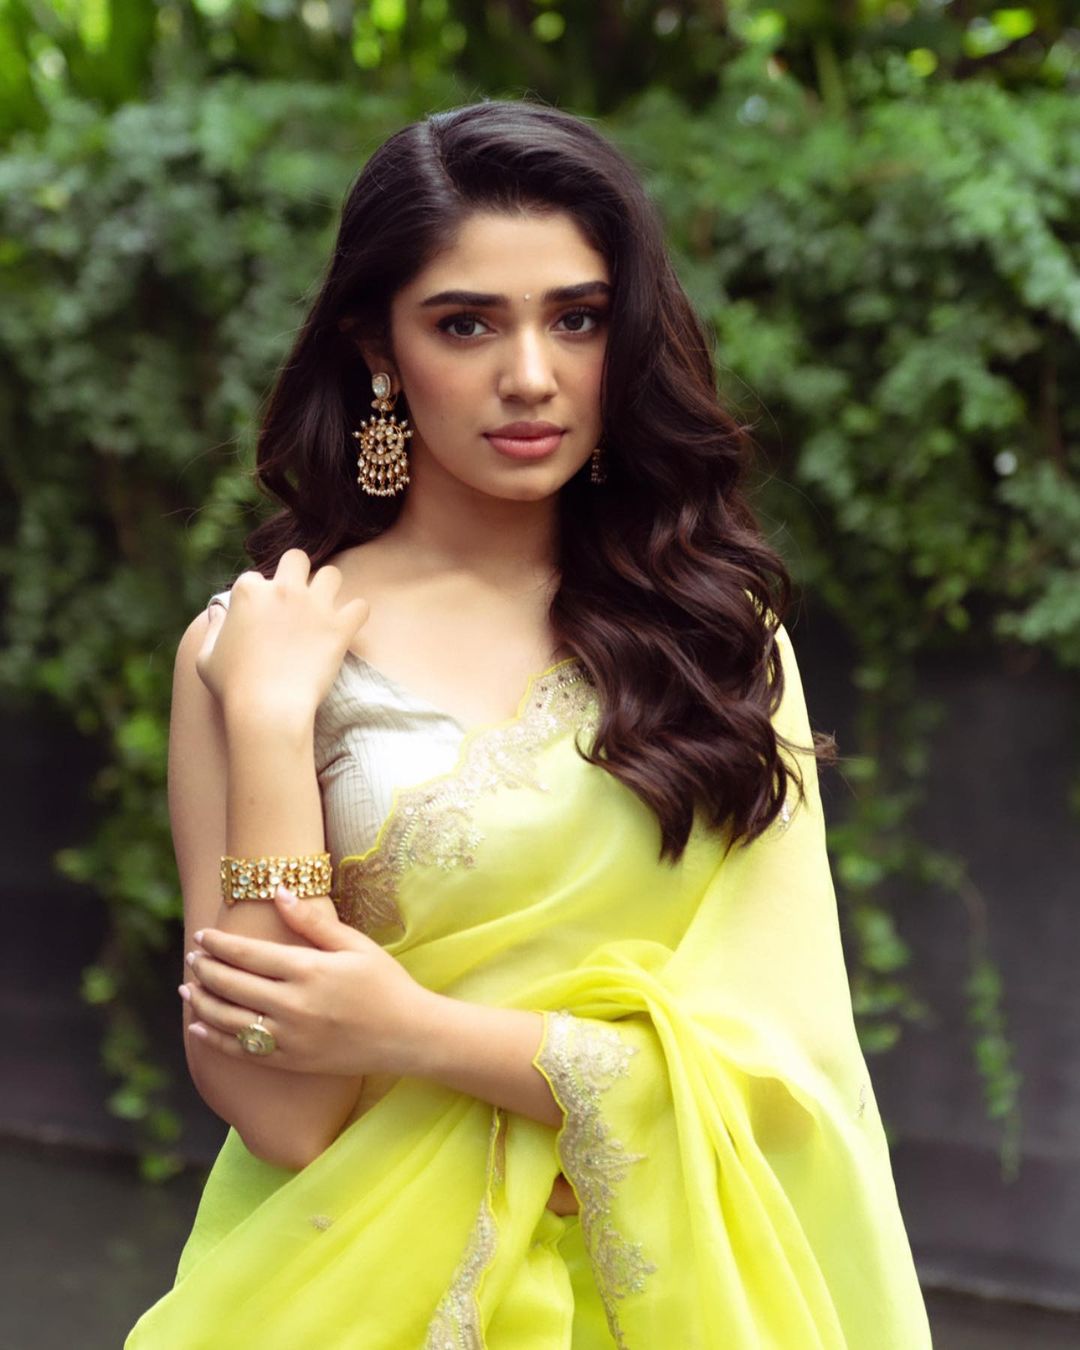 Krithi Shetty Poses In A Lemon Yellow Saree